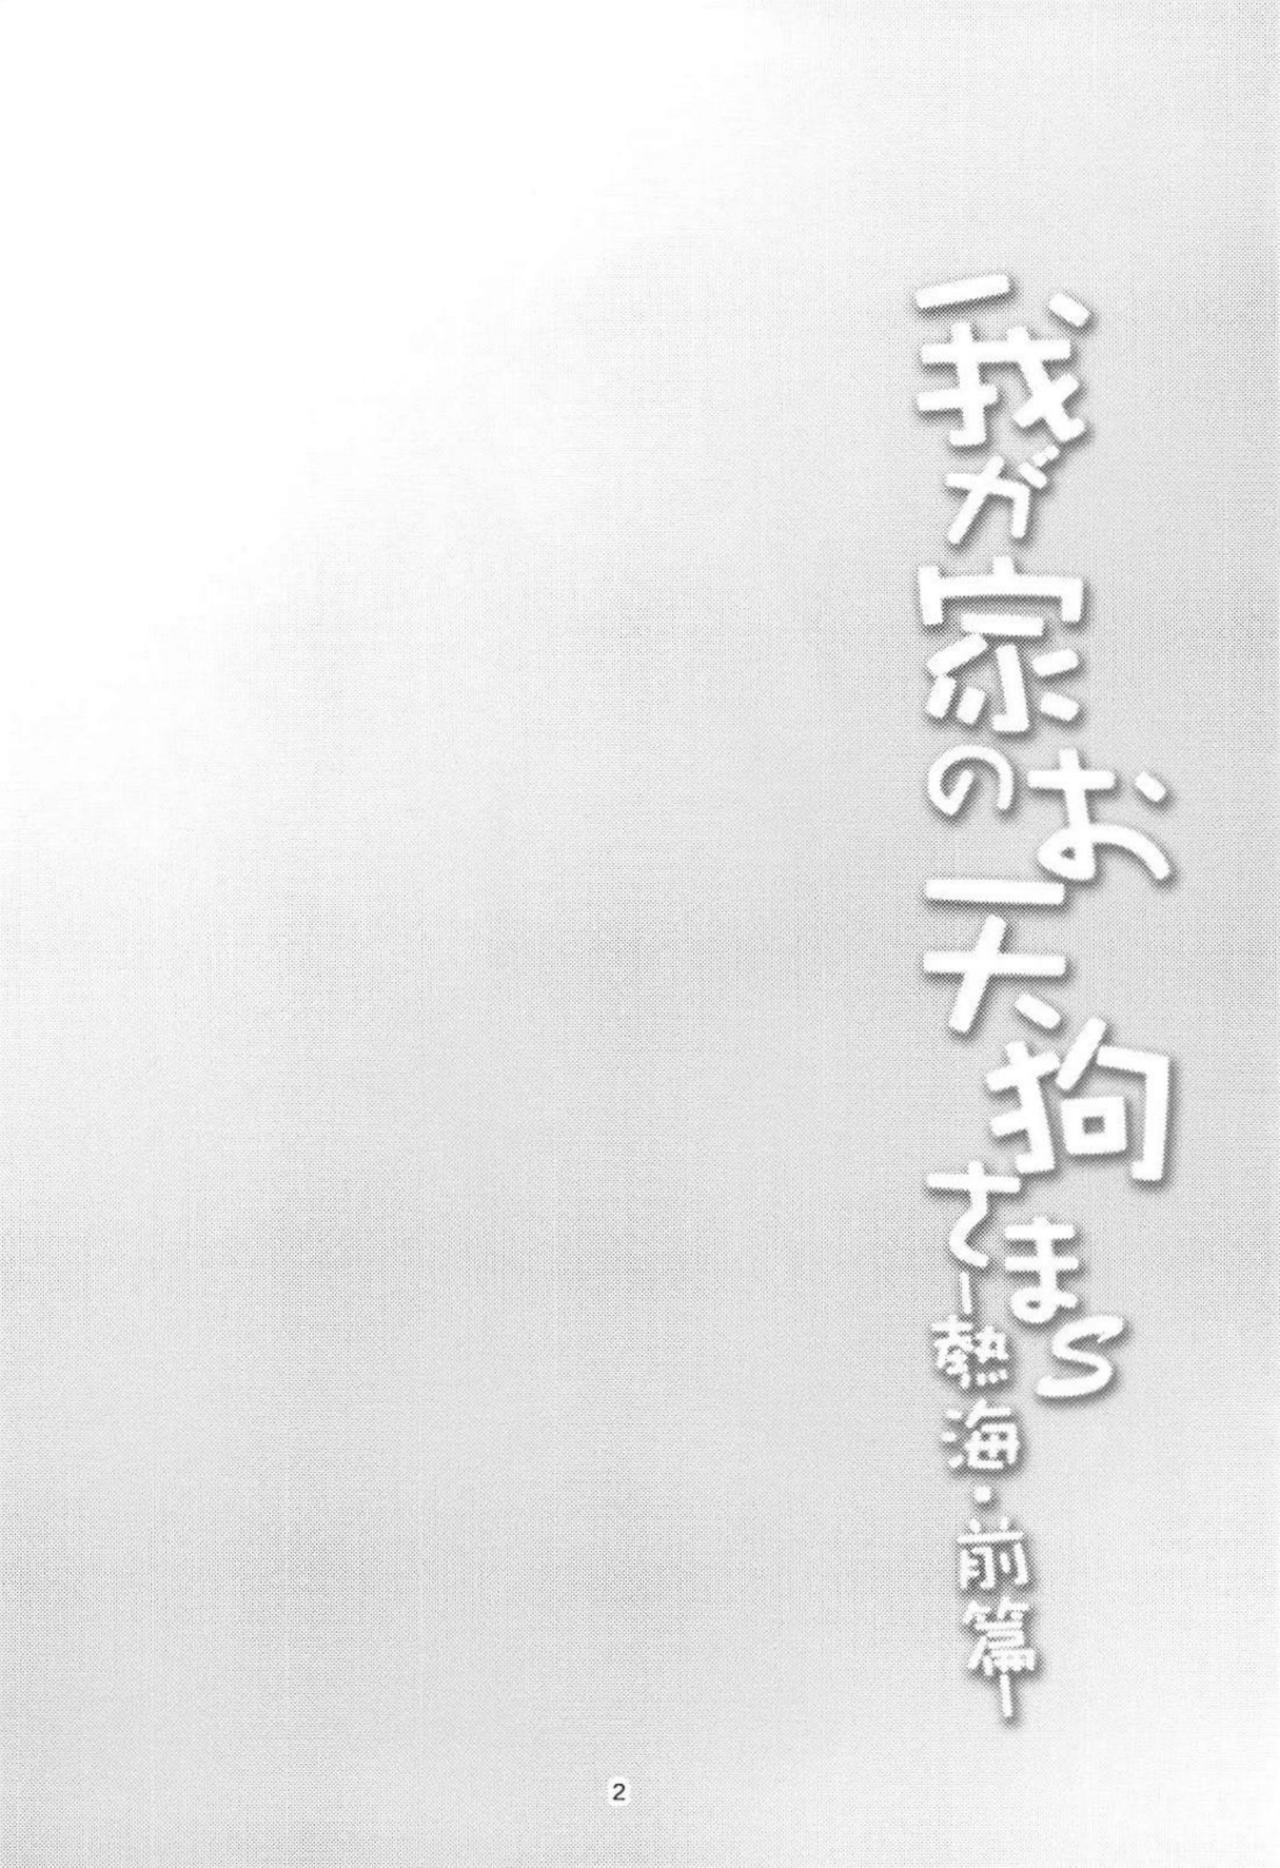 (Reitaisai 15) [WindArTeam (WindArt)] Wagaya no Otengu-sama S -Atami Zenpen- (Touhou Project) (例大祭15) [風芸WindArTeam (WindArt)] 我が家のお天狗さまS-熱海・前篇- (東方Project)